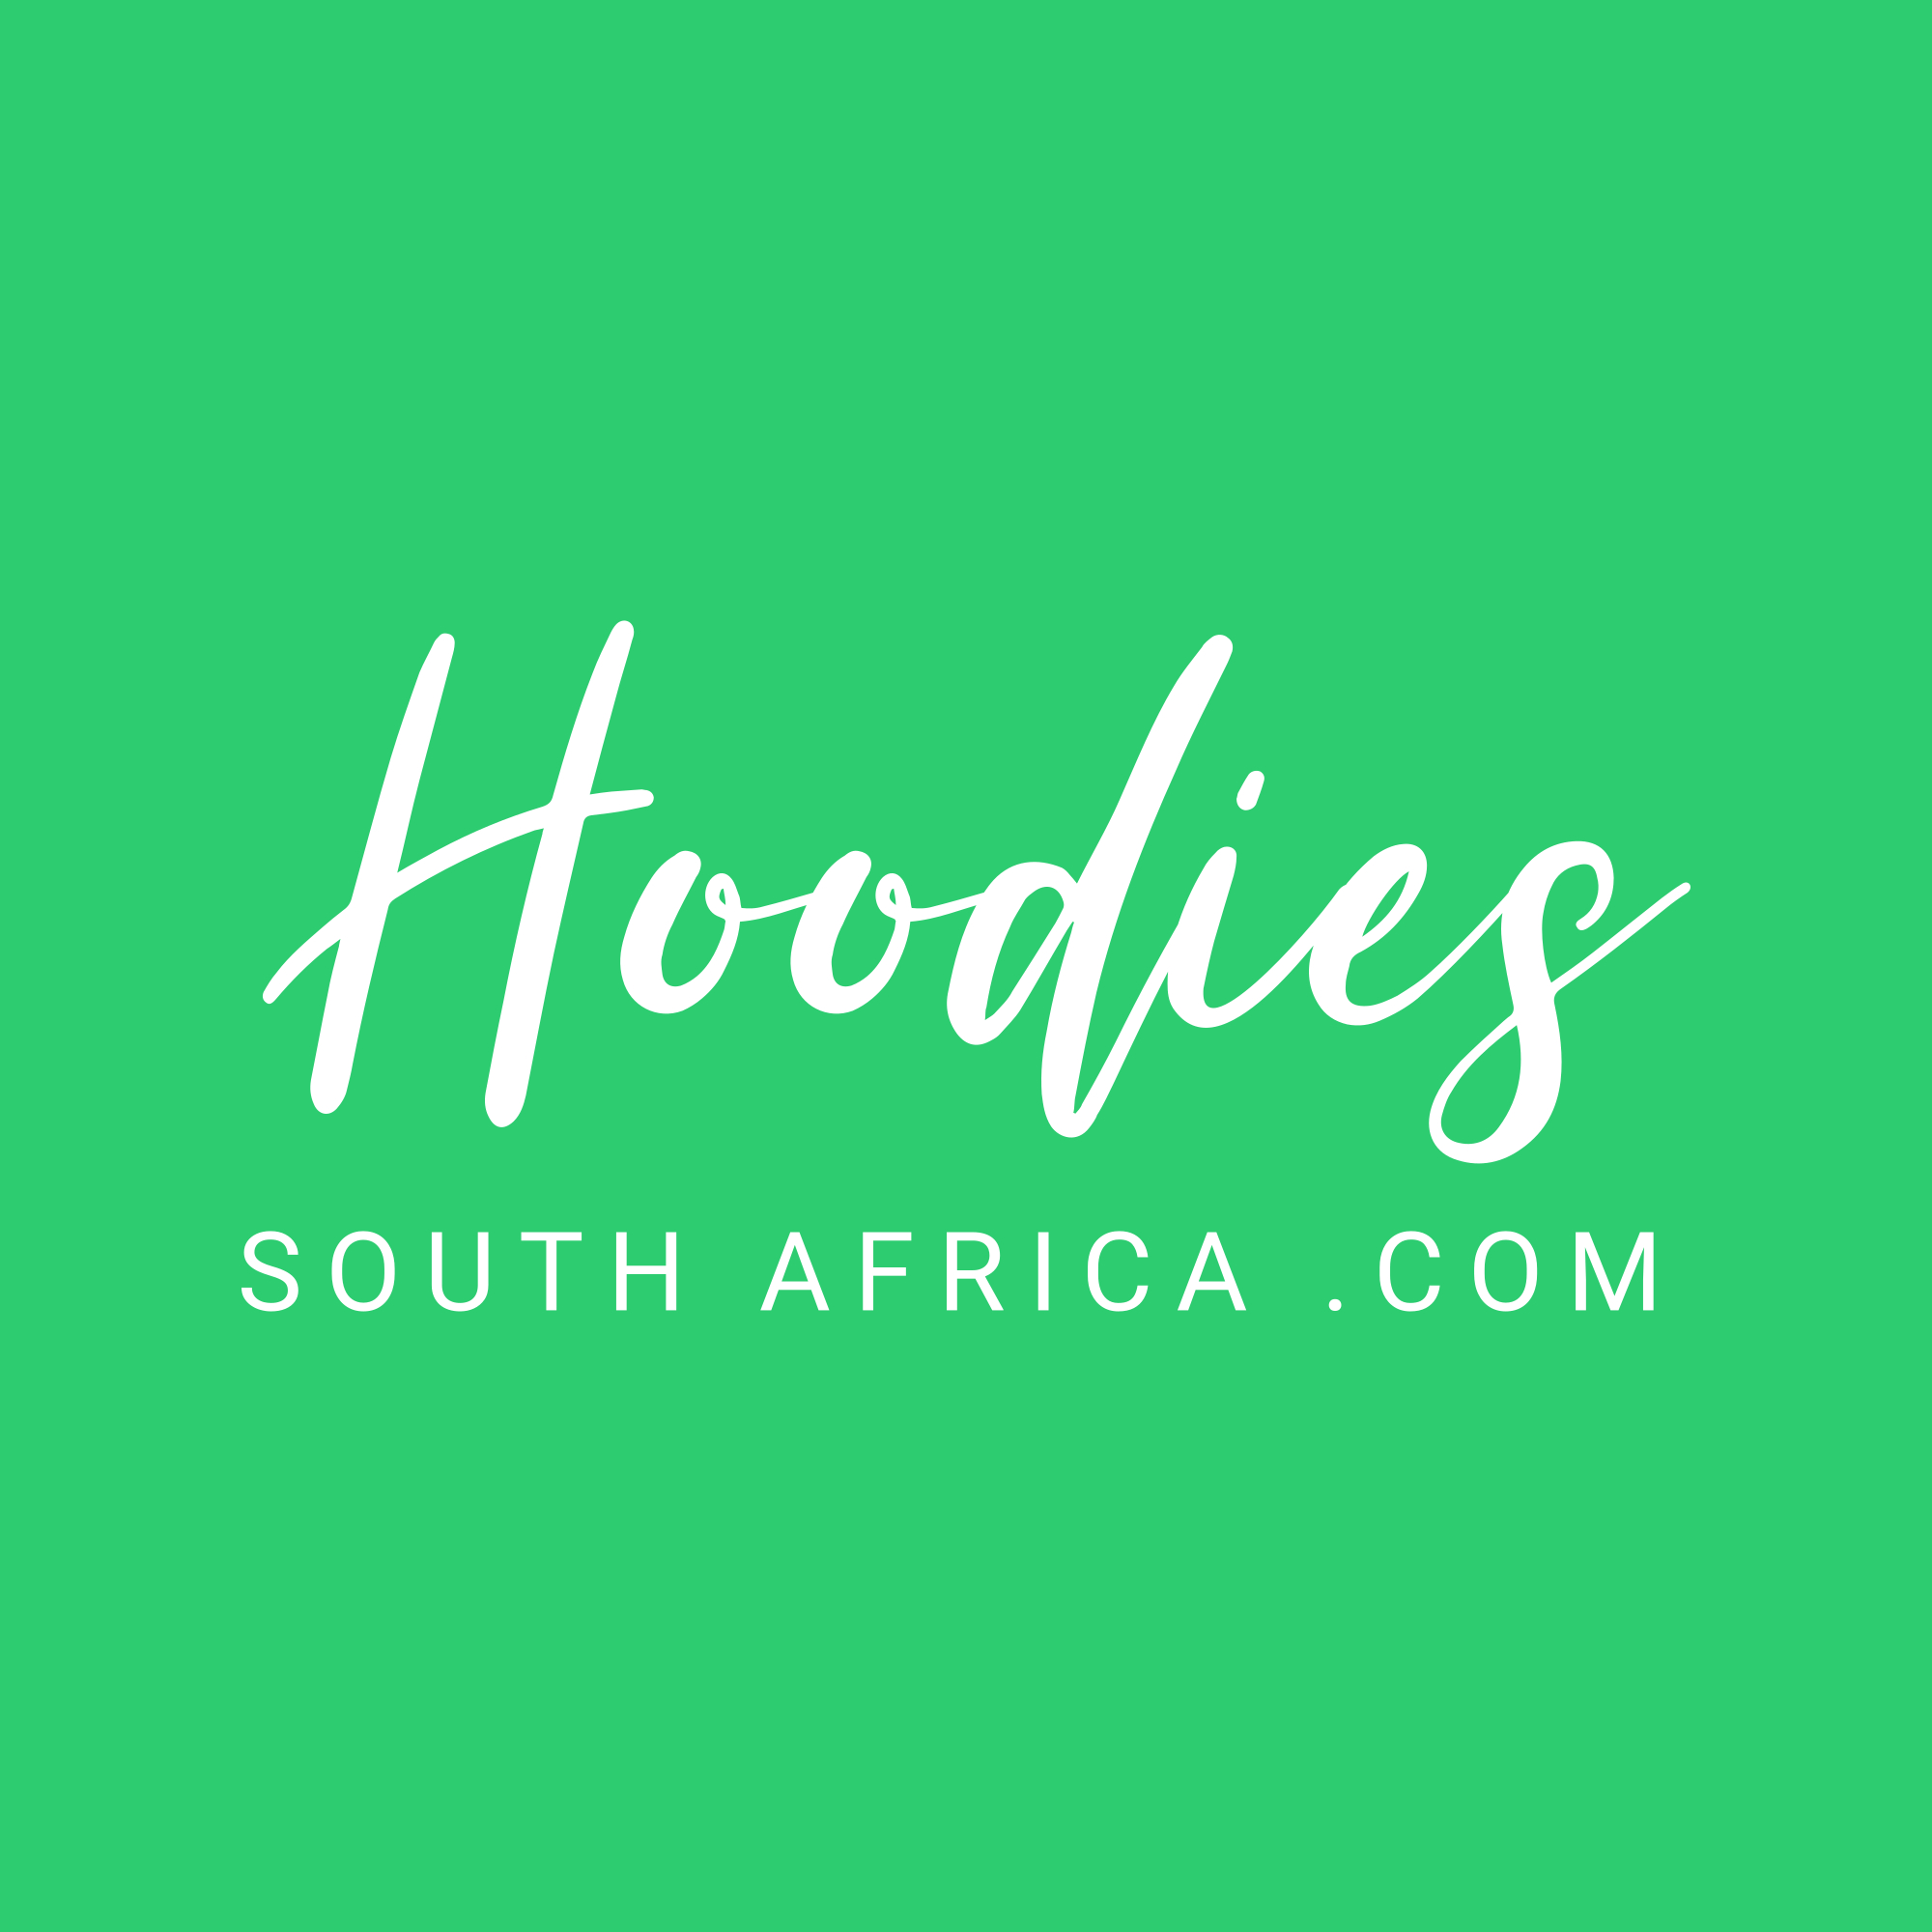 Hoodies SA